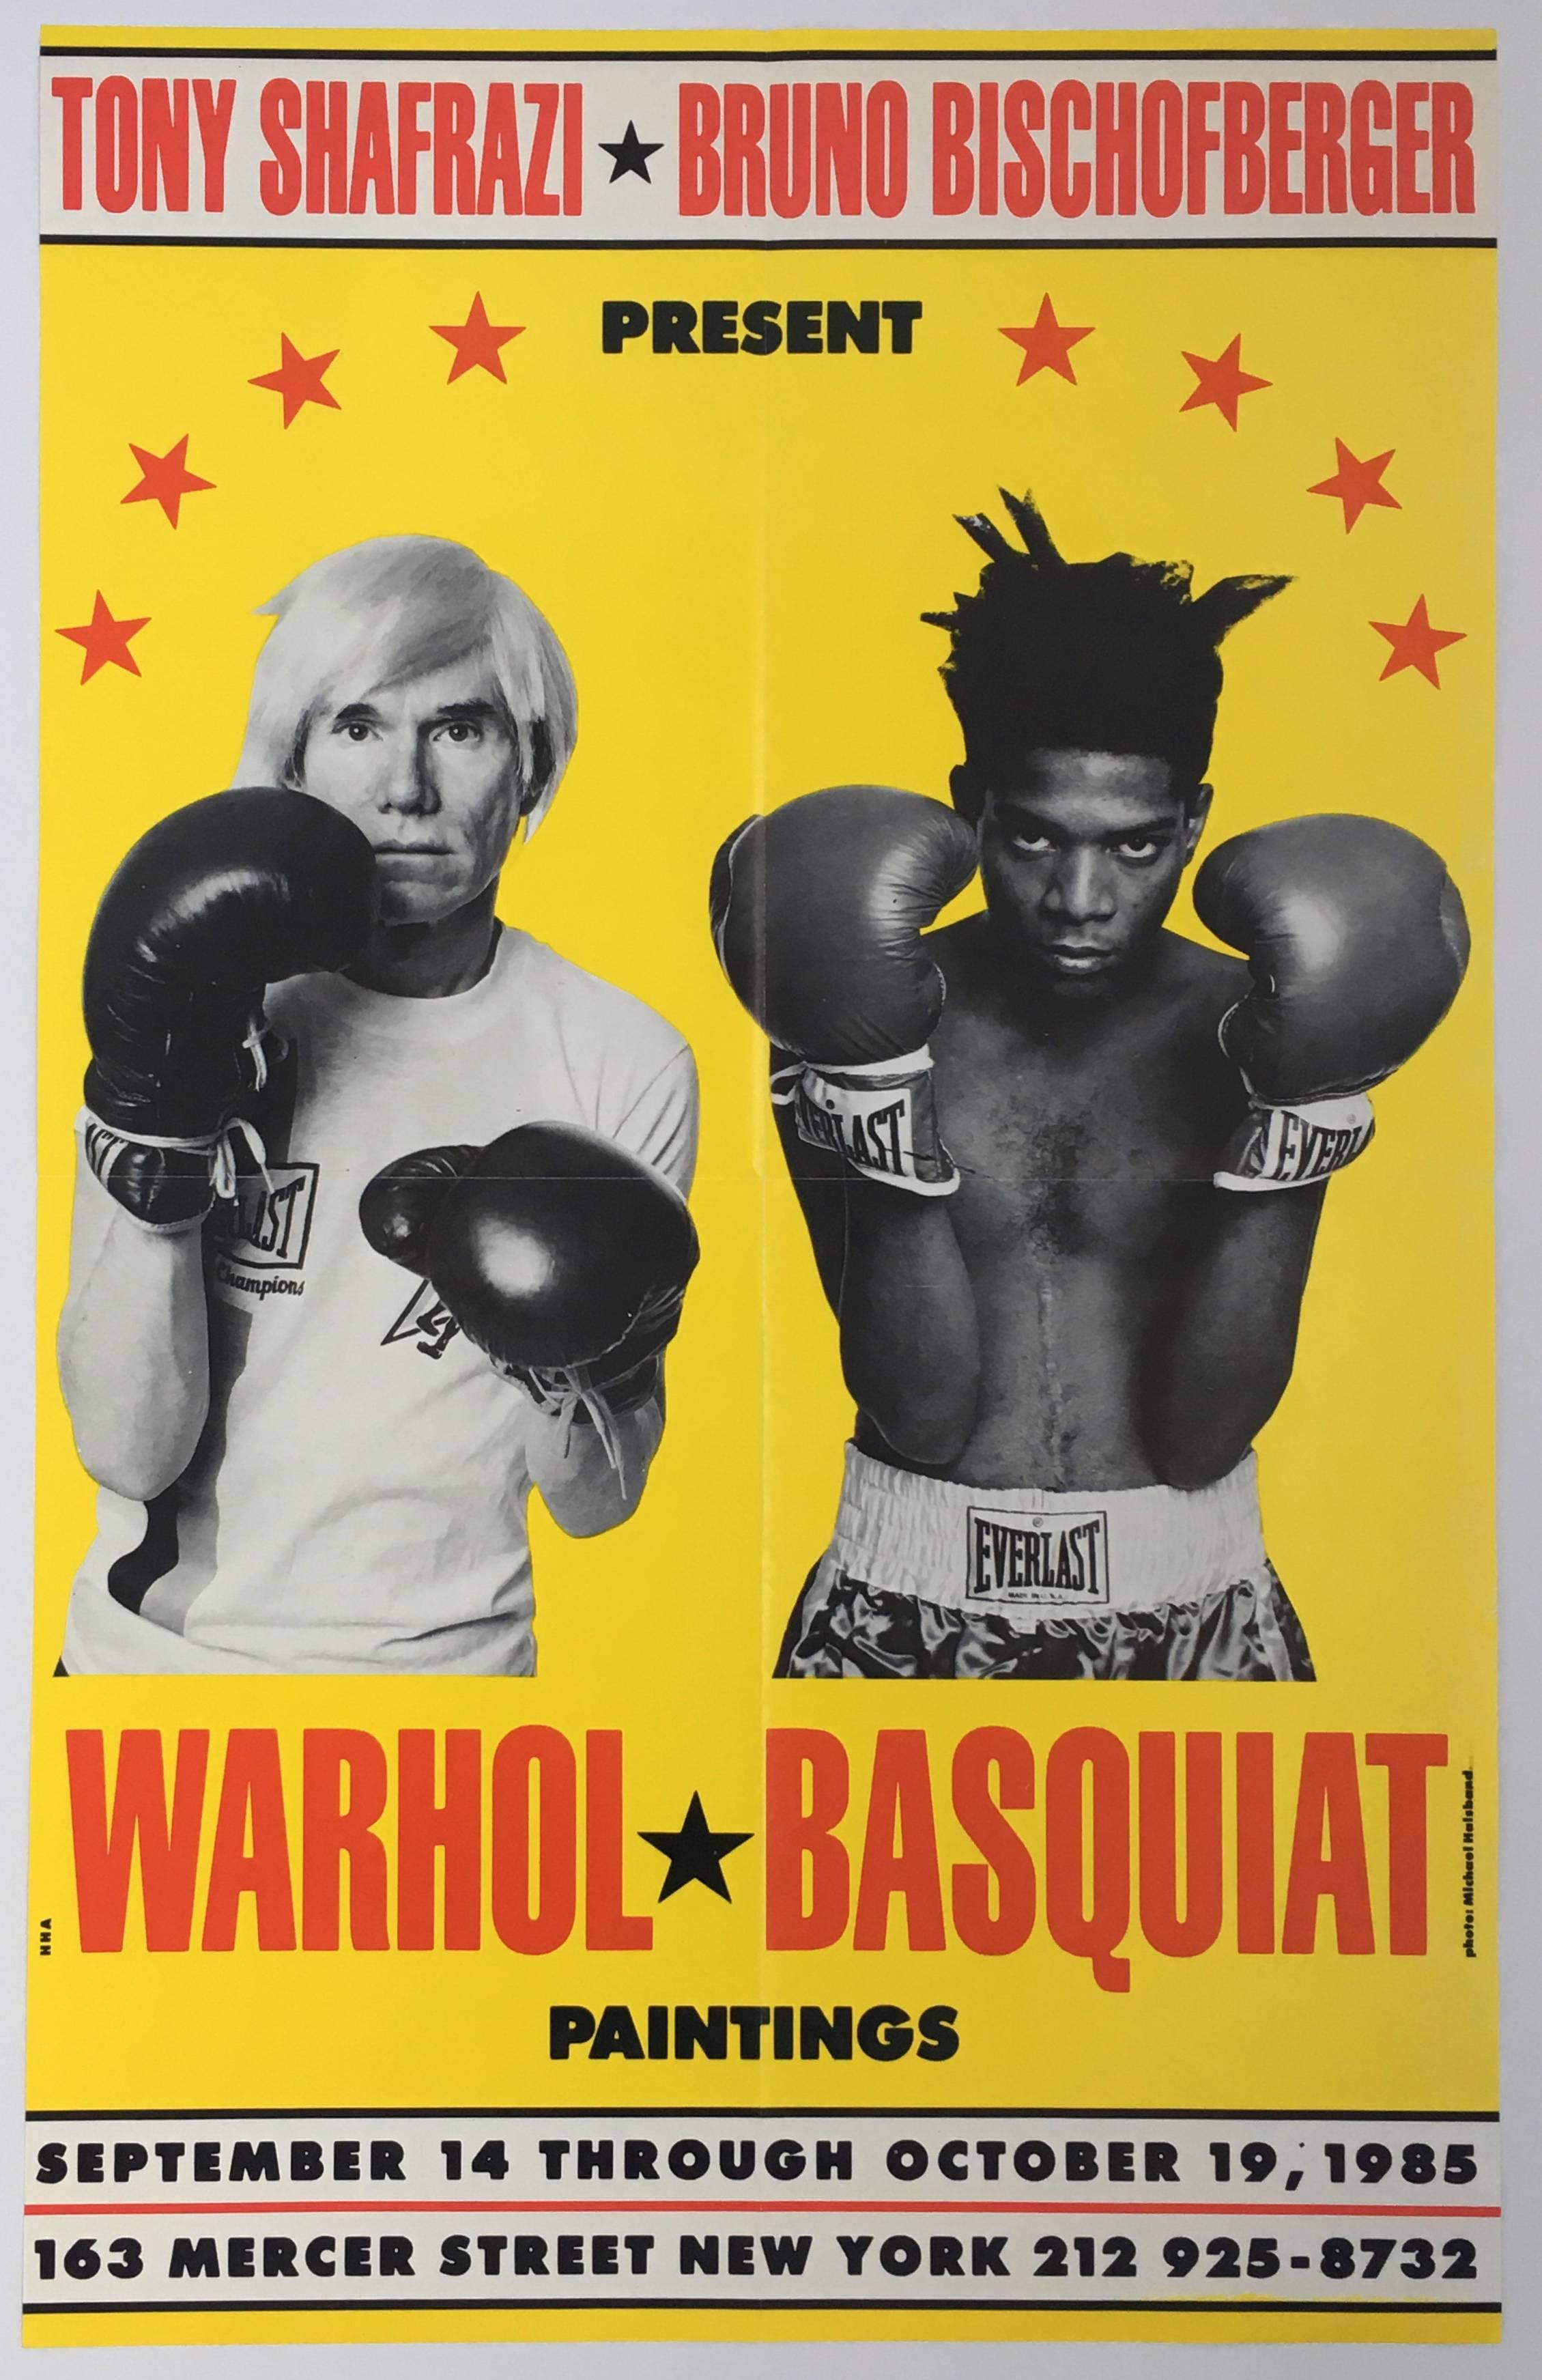 Andy Warhol:: Jean-Michel Basquiat Boxen 
Original Erstdruck Ausstellungsplakat für die 'Paintings' Show von 1985:: dieses Werk ist vielleicht das beständigste und populärste Bild der New Yorker Kunstszene der 1980er Jahre. Unter den begehrtesten